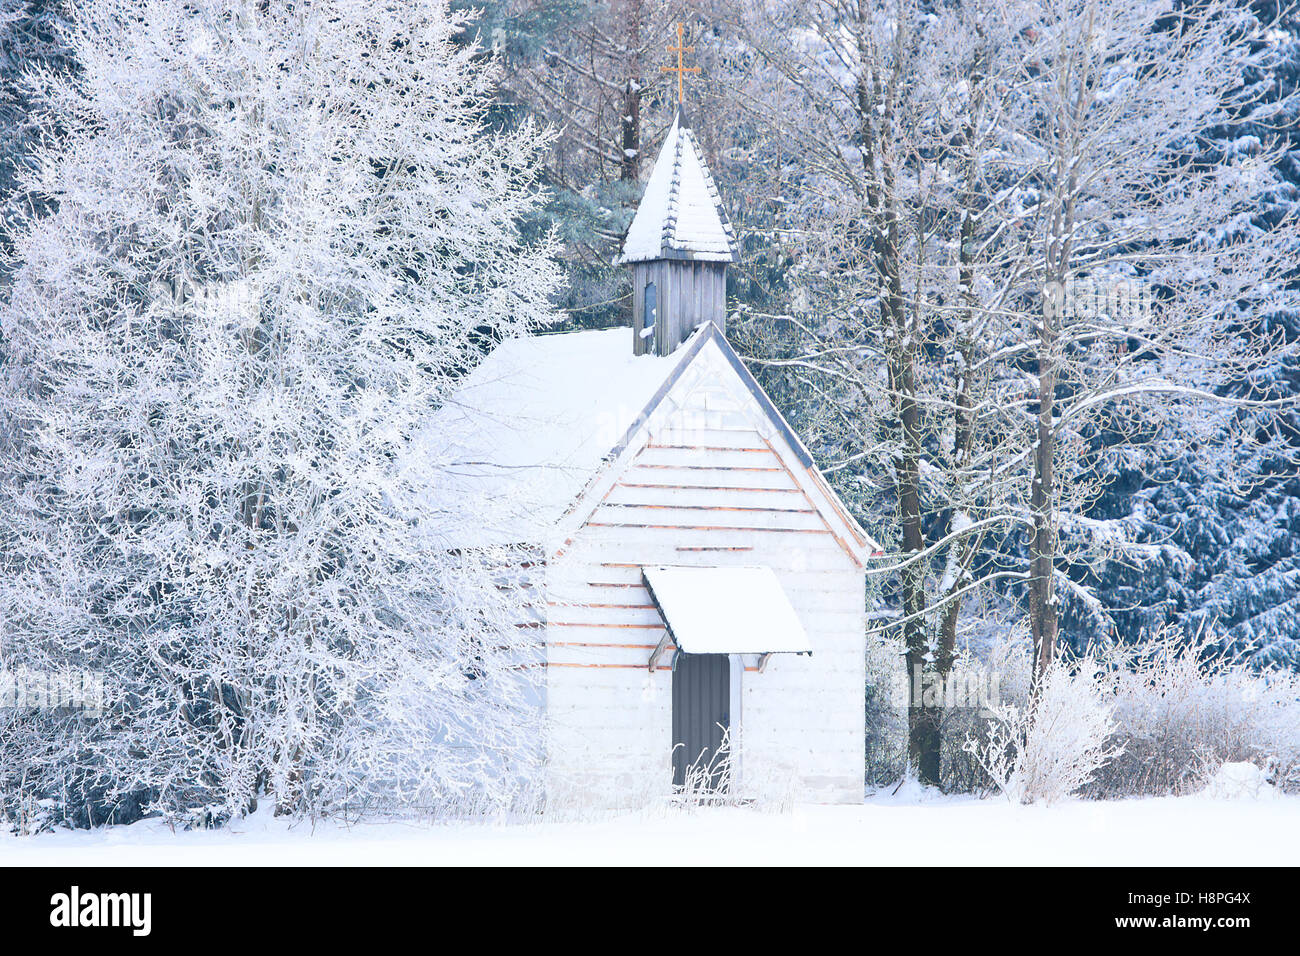 Petite chapelle woody en forêt enneigée. Stock photo capturée dans la région rurale de Bavière Allgaeu alpin Banque D'Images